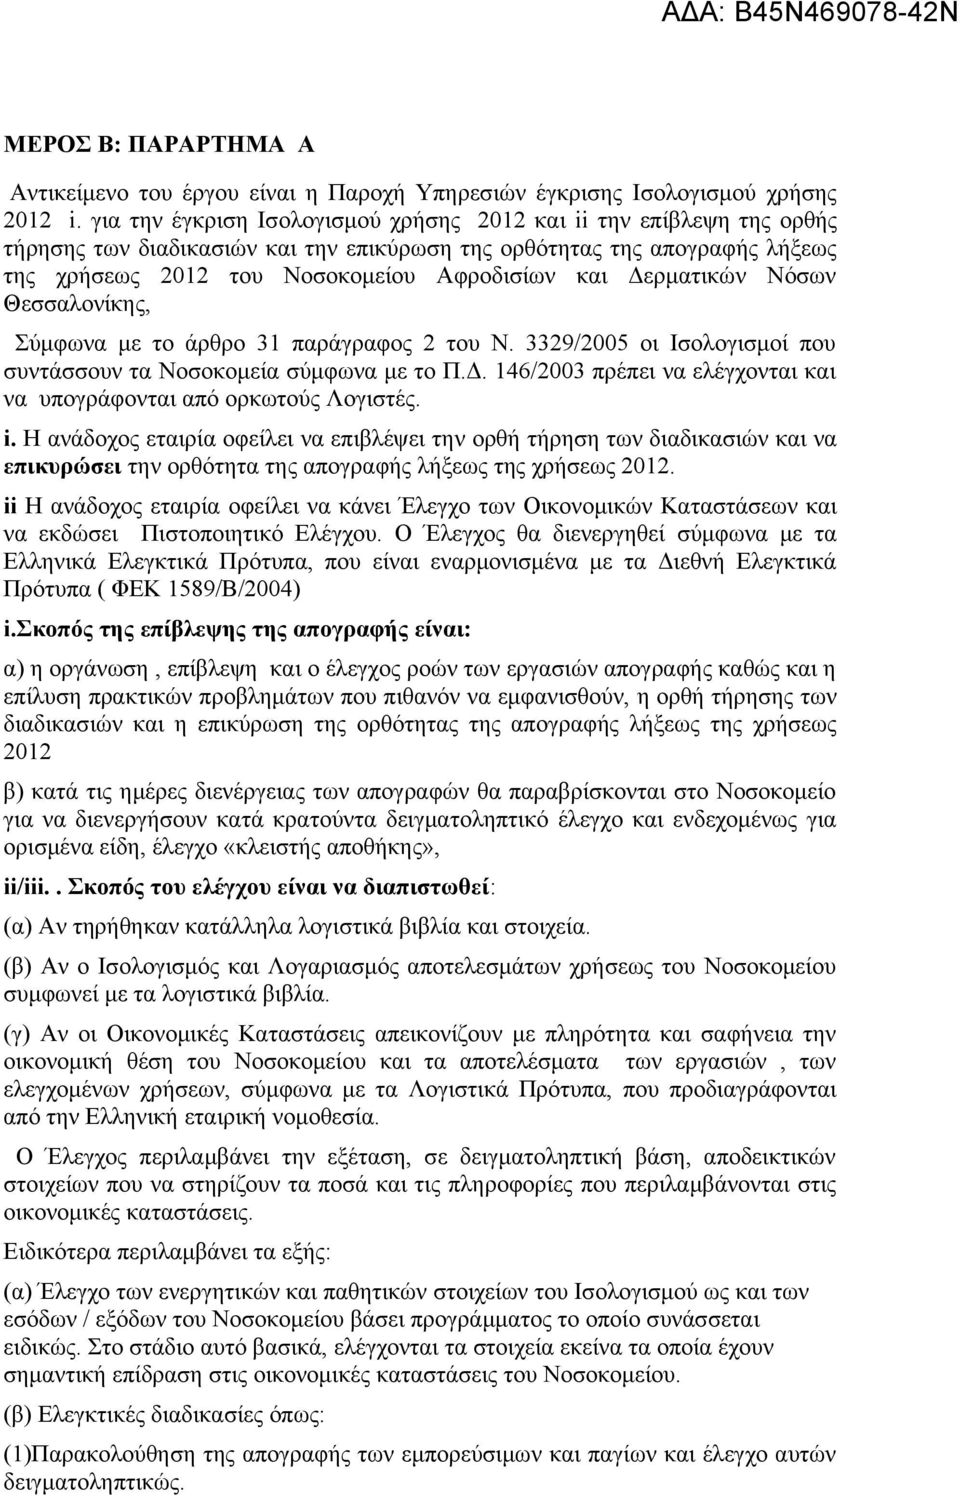 Δερματικών Νόσων Θεσσαλονίκης, Σύμφωνα με το άρθρο 31 παράγραφος 2 του Ν. 3329/2005 οι Ισολογισμοί που συντάσσουν τα Νοσοκομεία σύμφωνα με το Π.Δ. 146/2003 πρέπει να ελέγχονται και να υπογράφονται από ορκωτούς Λογιστές.